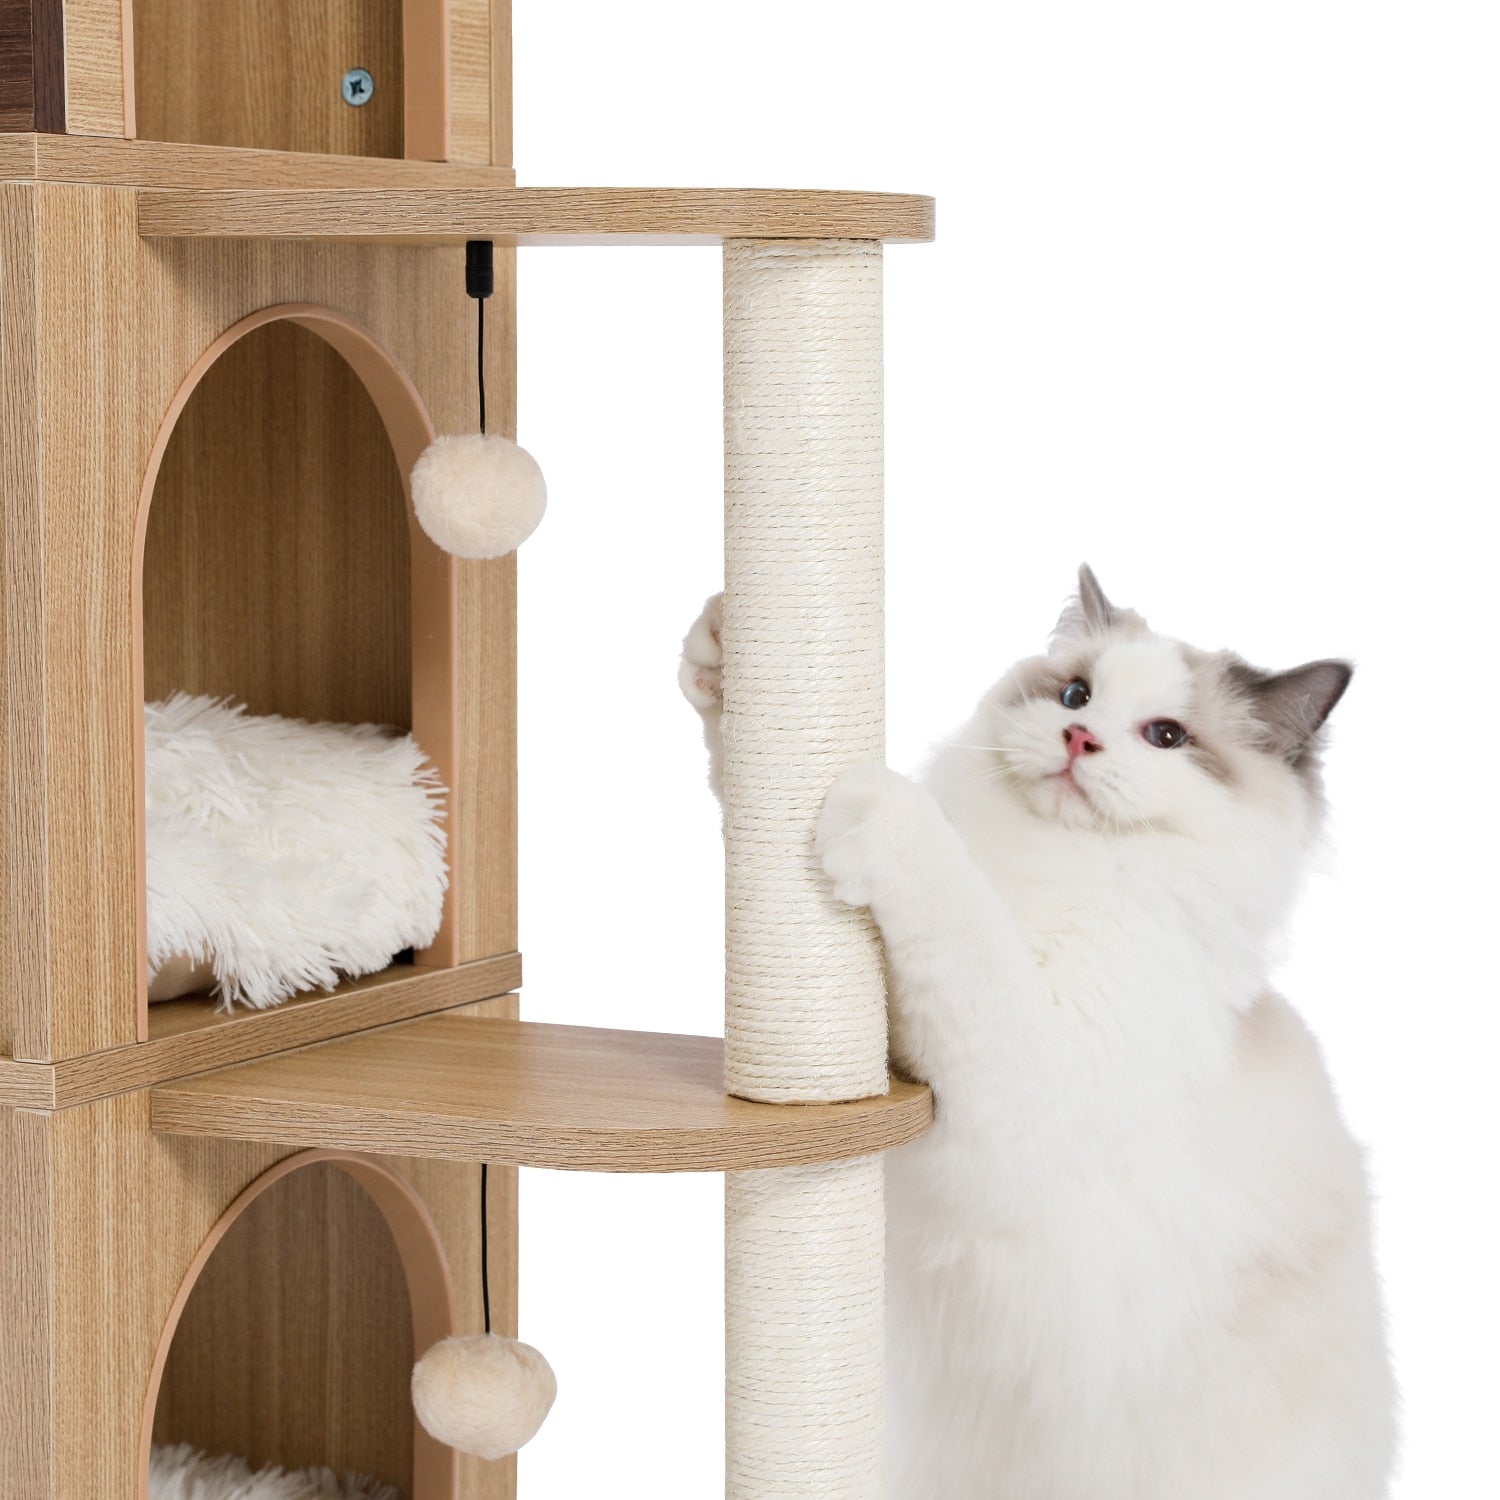 Wooden Modern Cat Tower